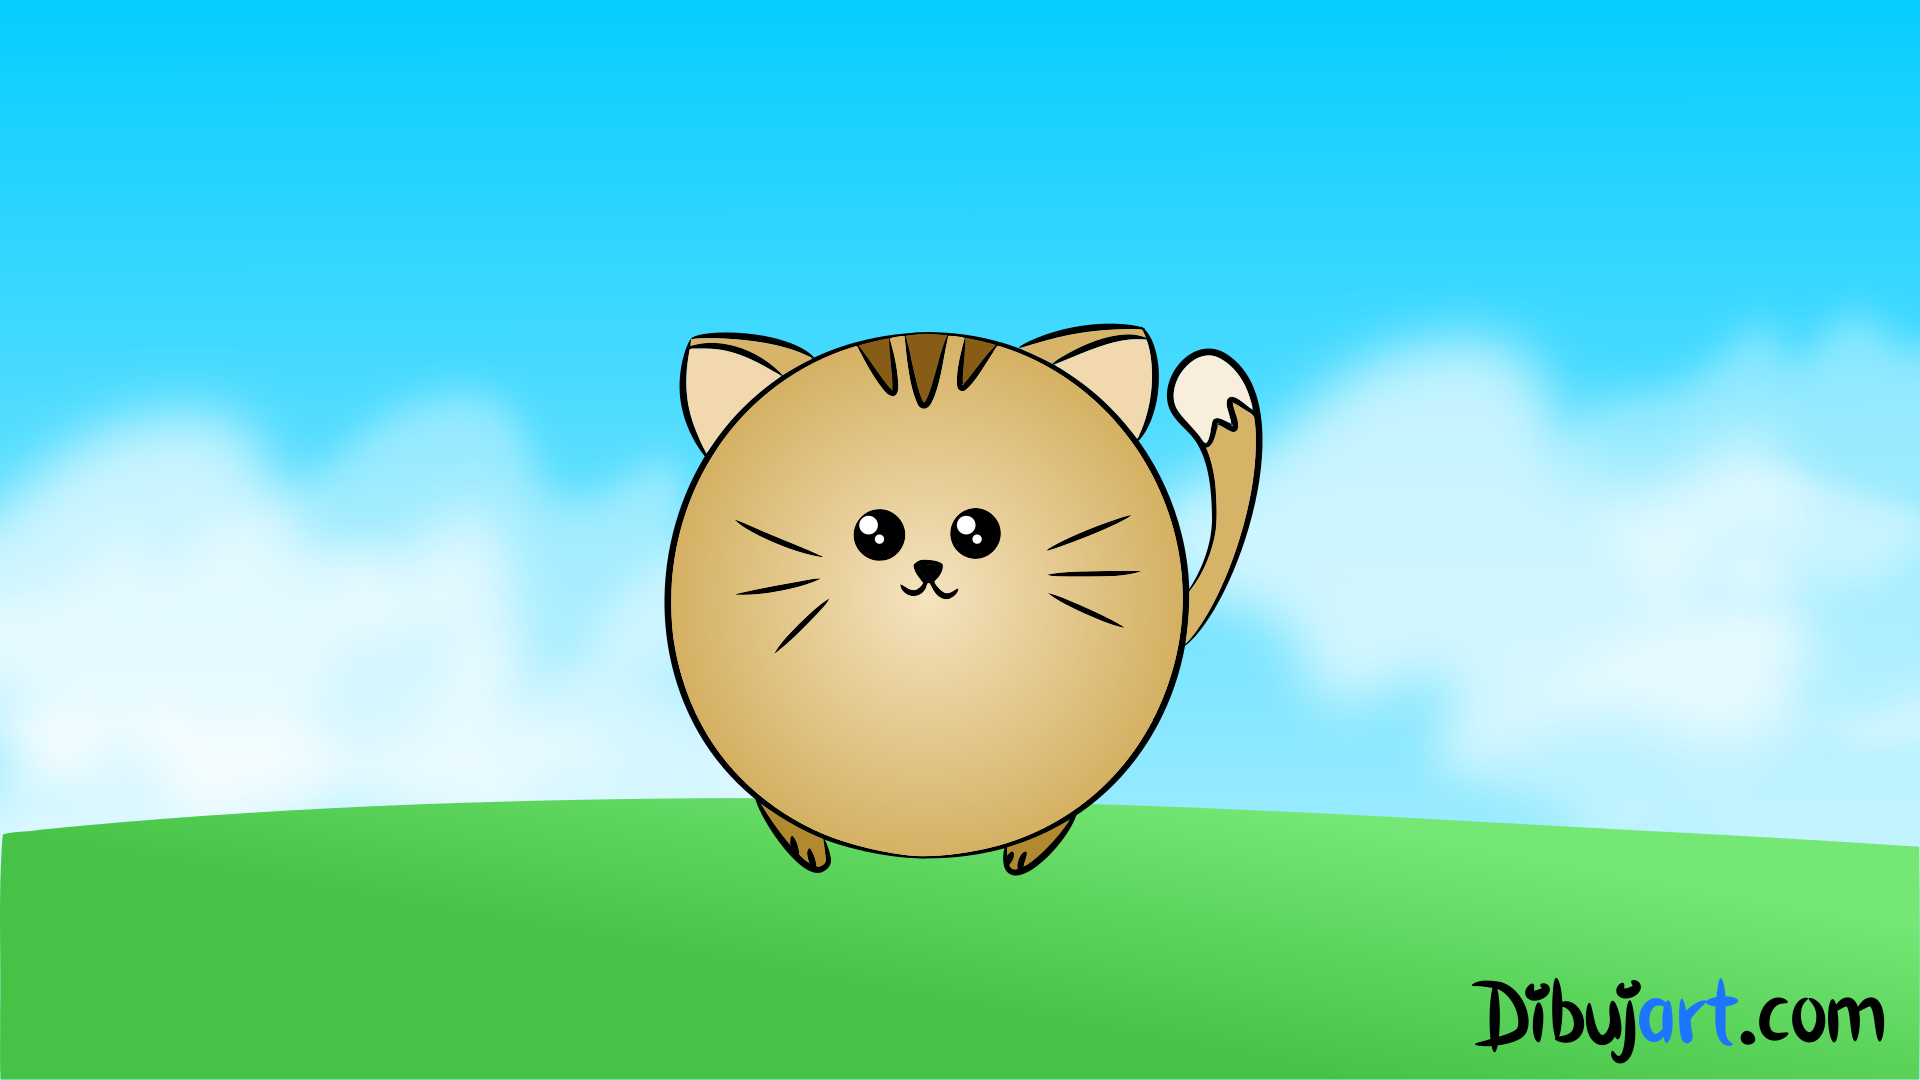 Cómo dibujar una Gato fácil Kawaii #2 Serie de dibujos de Gatos — Dibujos para niños | dibujart.com